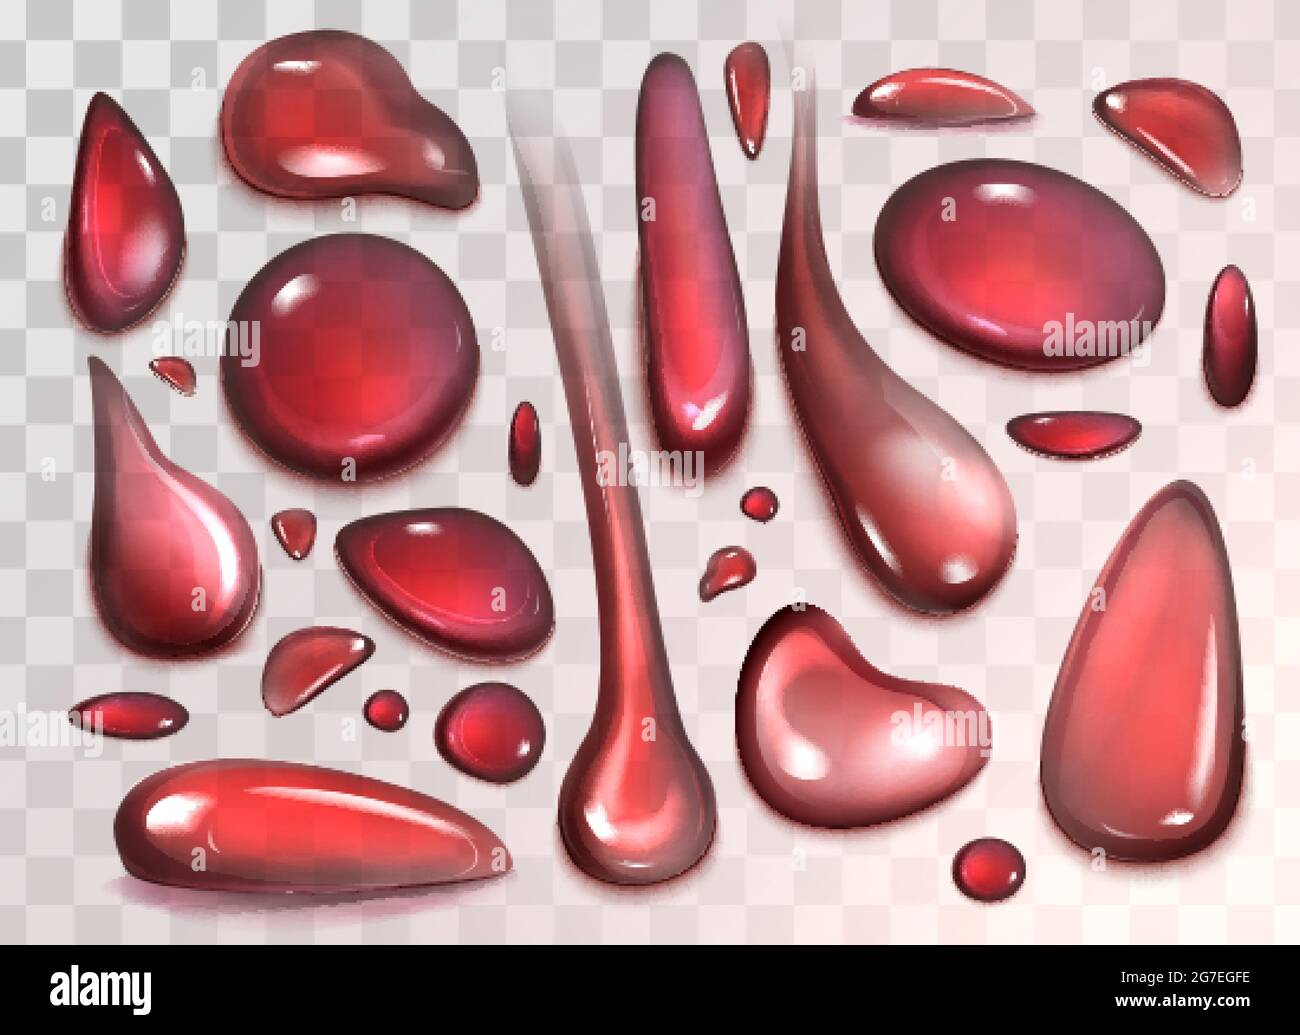 Gocce rosse di vino, acqua, succo o sangue isolate su sfondo trasparente. Vettore realistico gocce liquide di ciliegia, fragola o succo di melograno, bevanda di frutta. Bolle trasparenti di forma diversa. Illustrazione Vettoriale